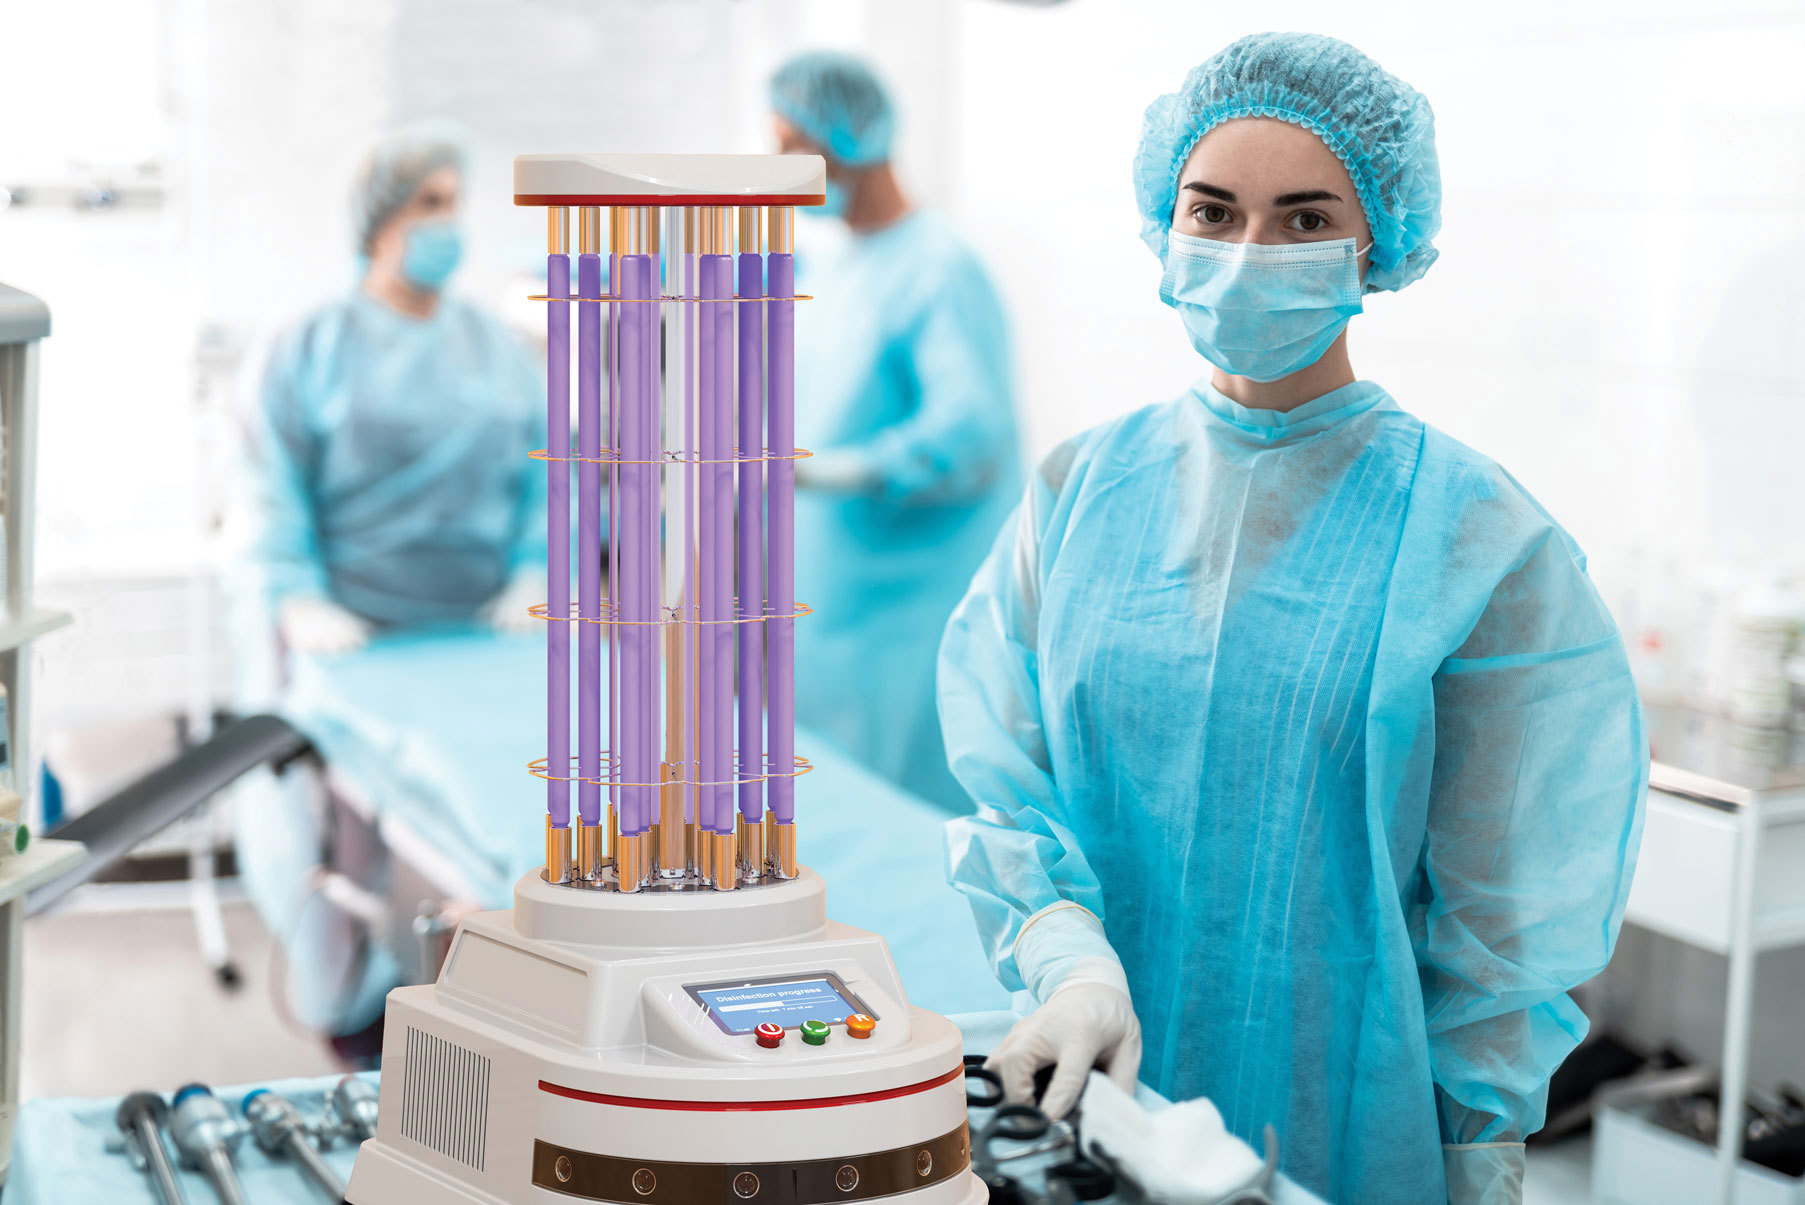 UV 레이저는 형광 현미경 기반의 바이오메디컬 시스템 등 각종 응용 분야에 안성맞춤